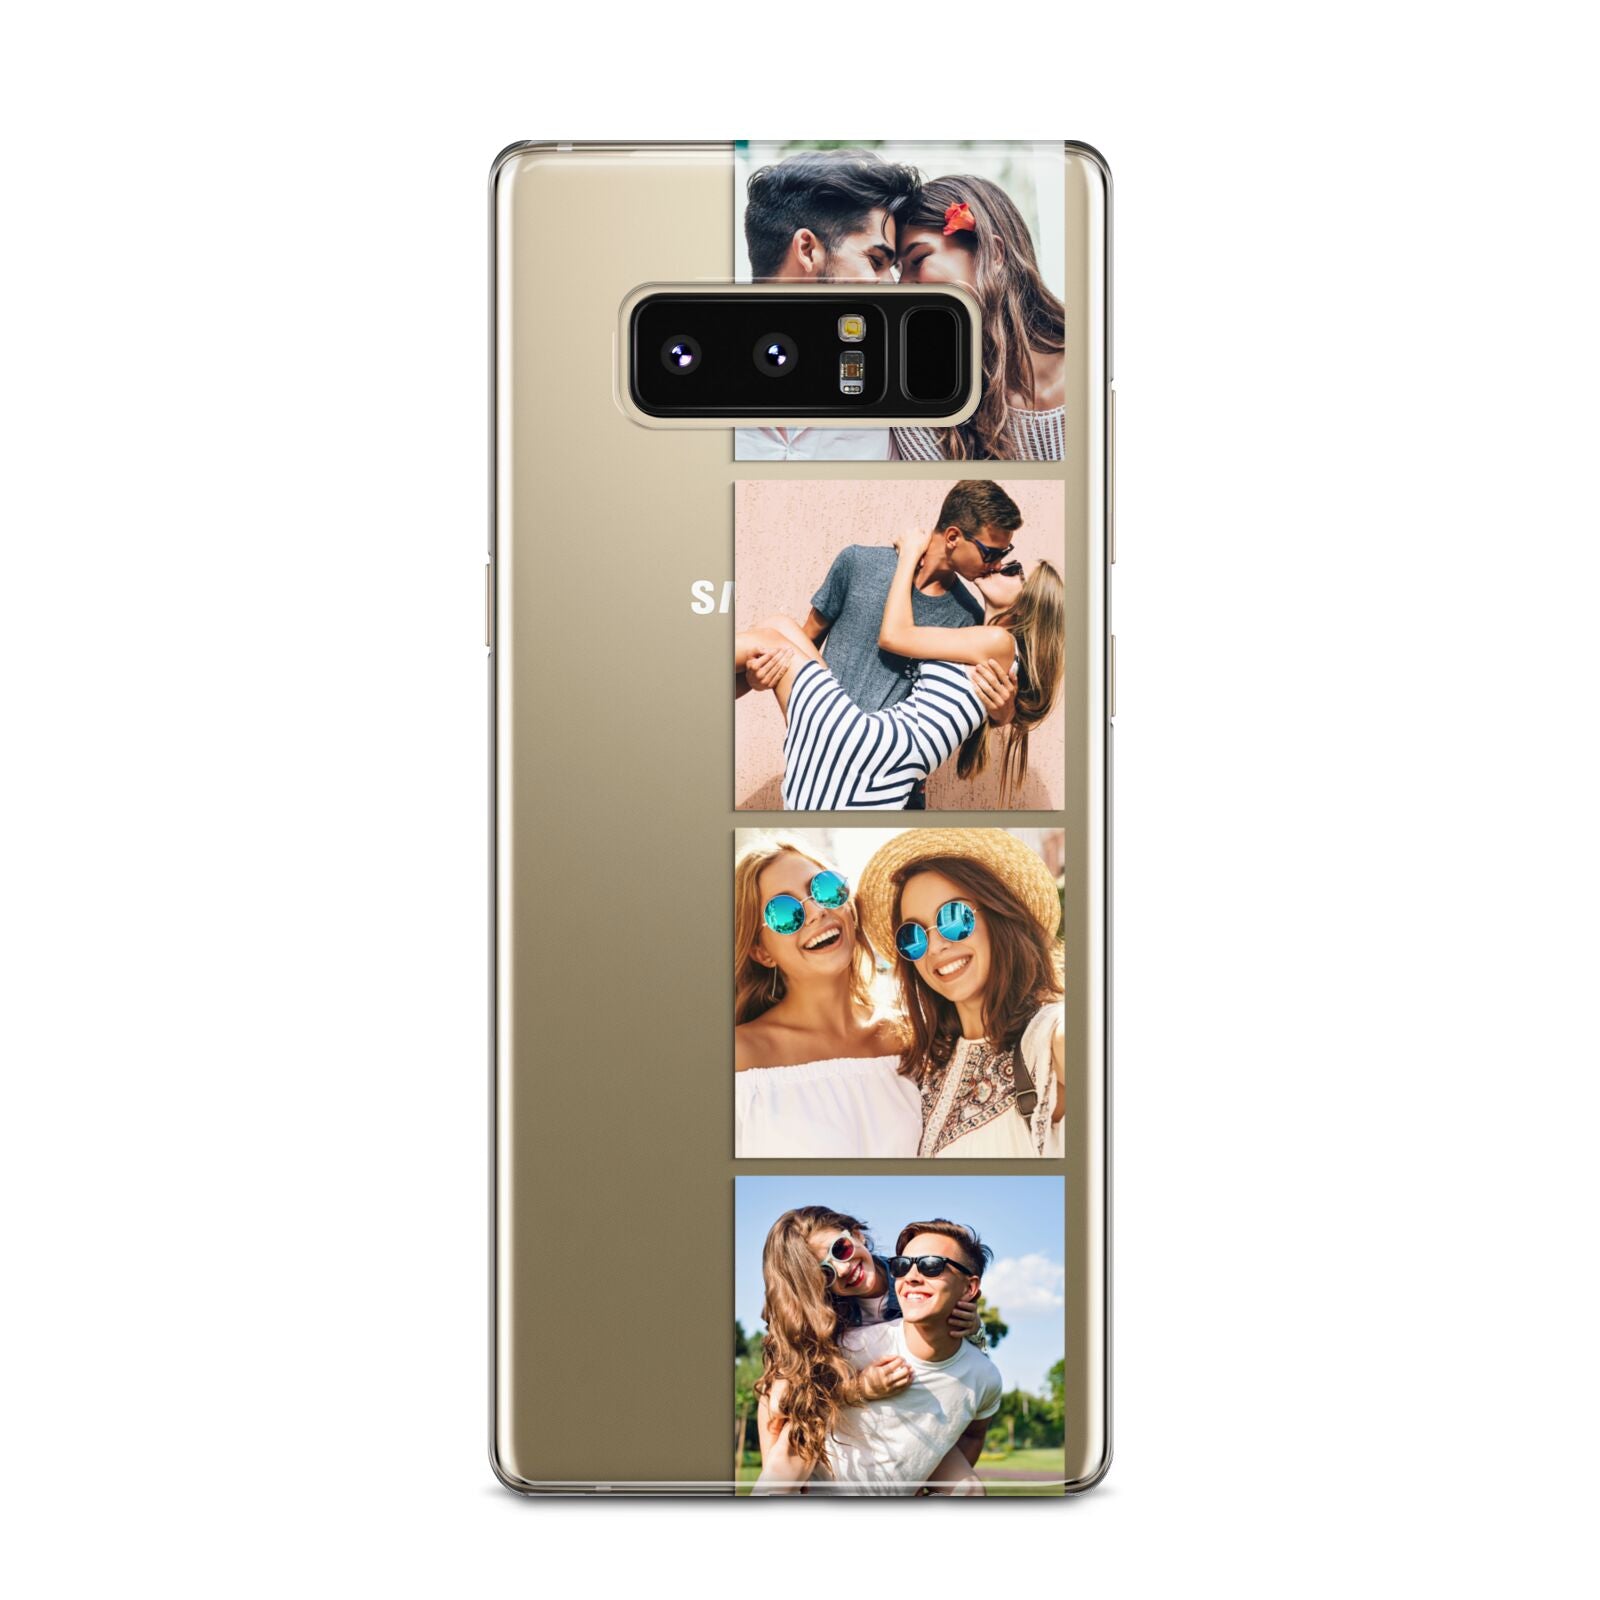 Photo Strip Montage Upload Samsung Galaxy Note 8 Case